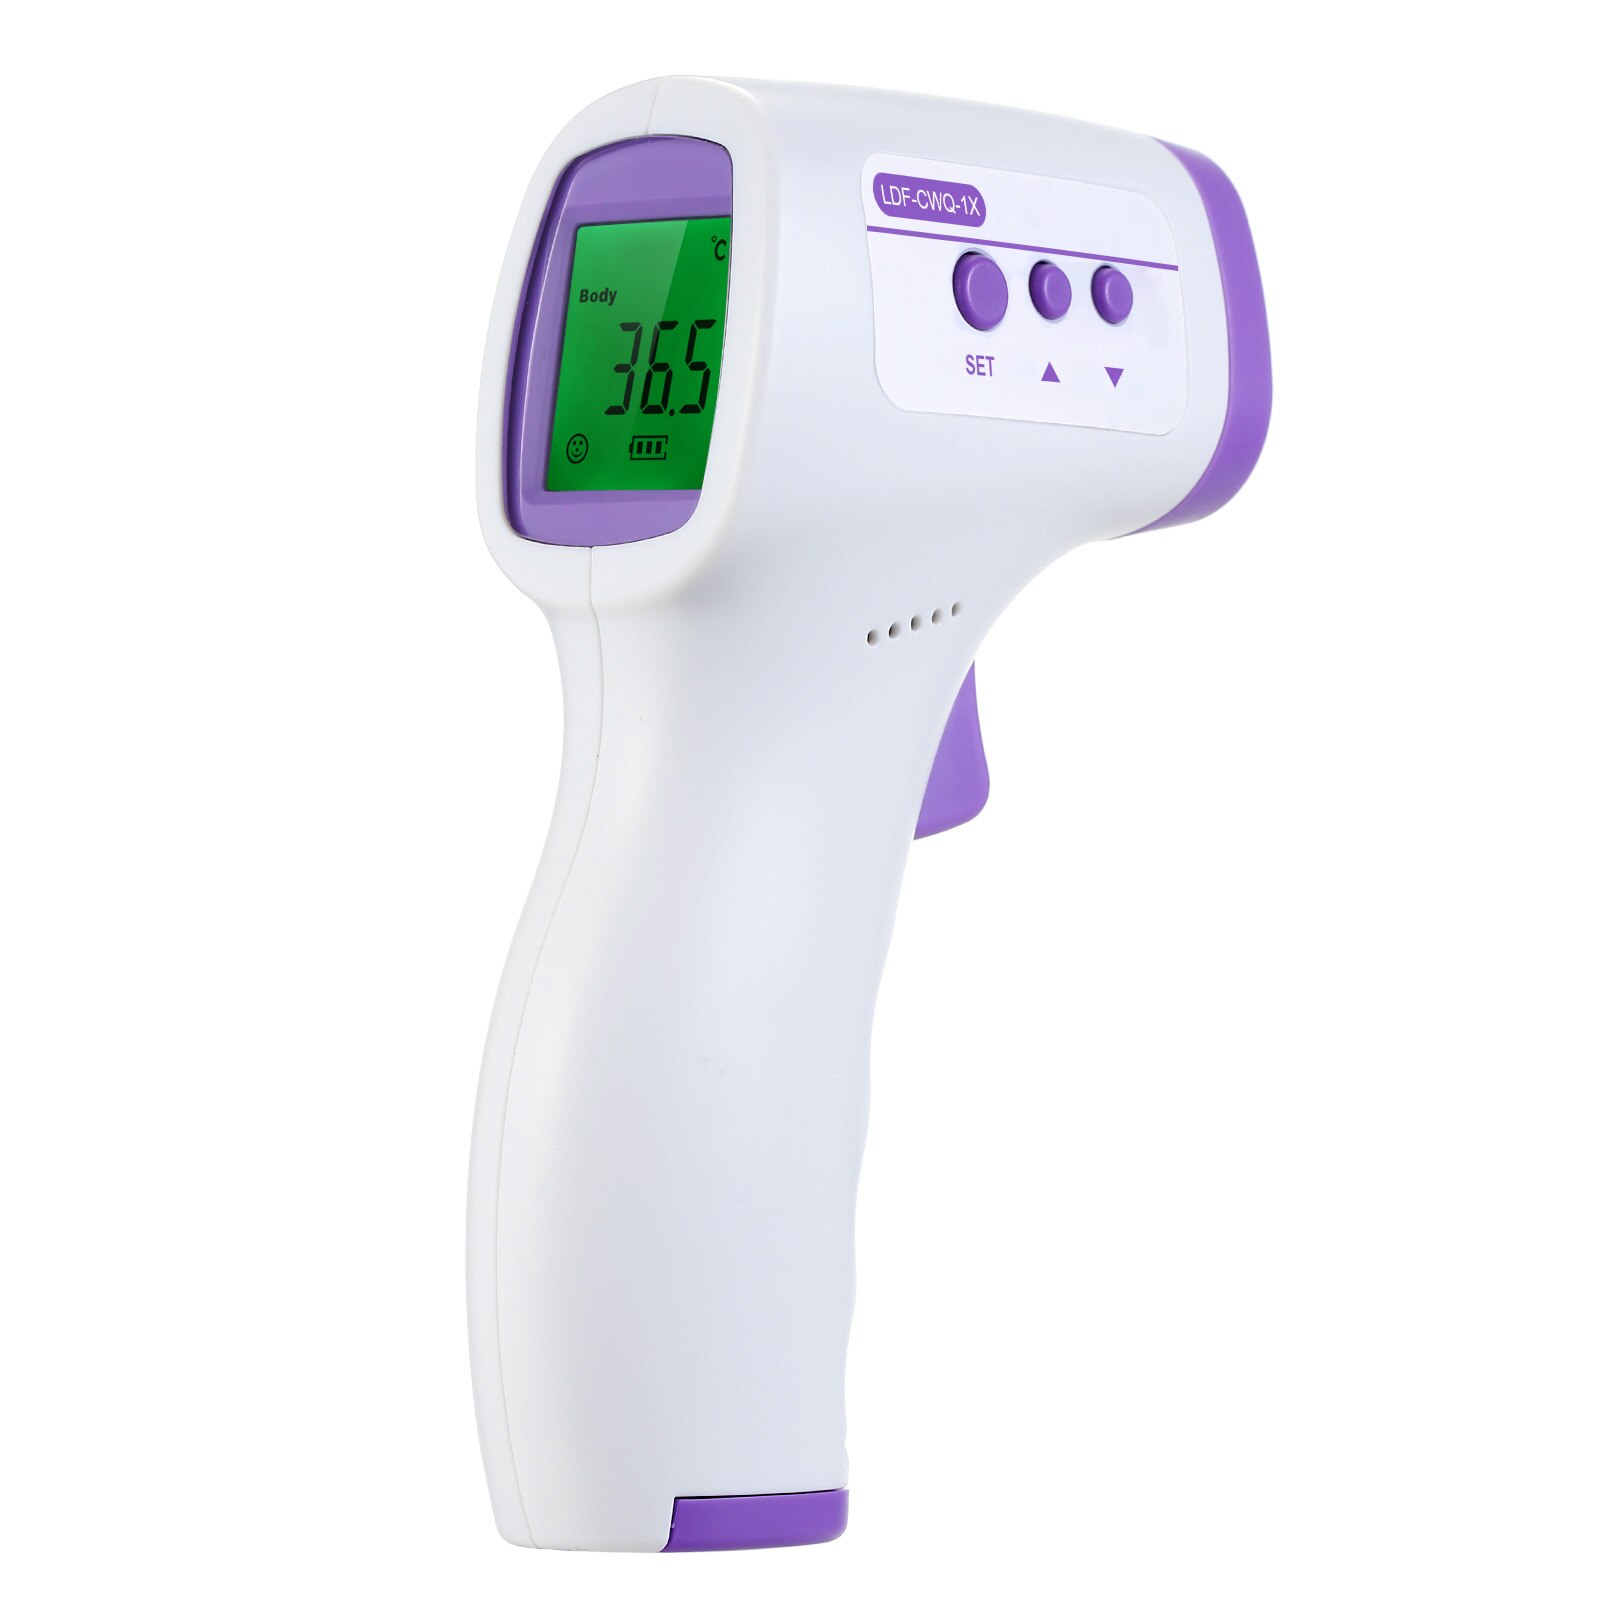 Infrarødt termometer digitalt berøringsfrit termometer foran baby voksne krop nøjagtig måling elektronisk termometer